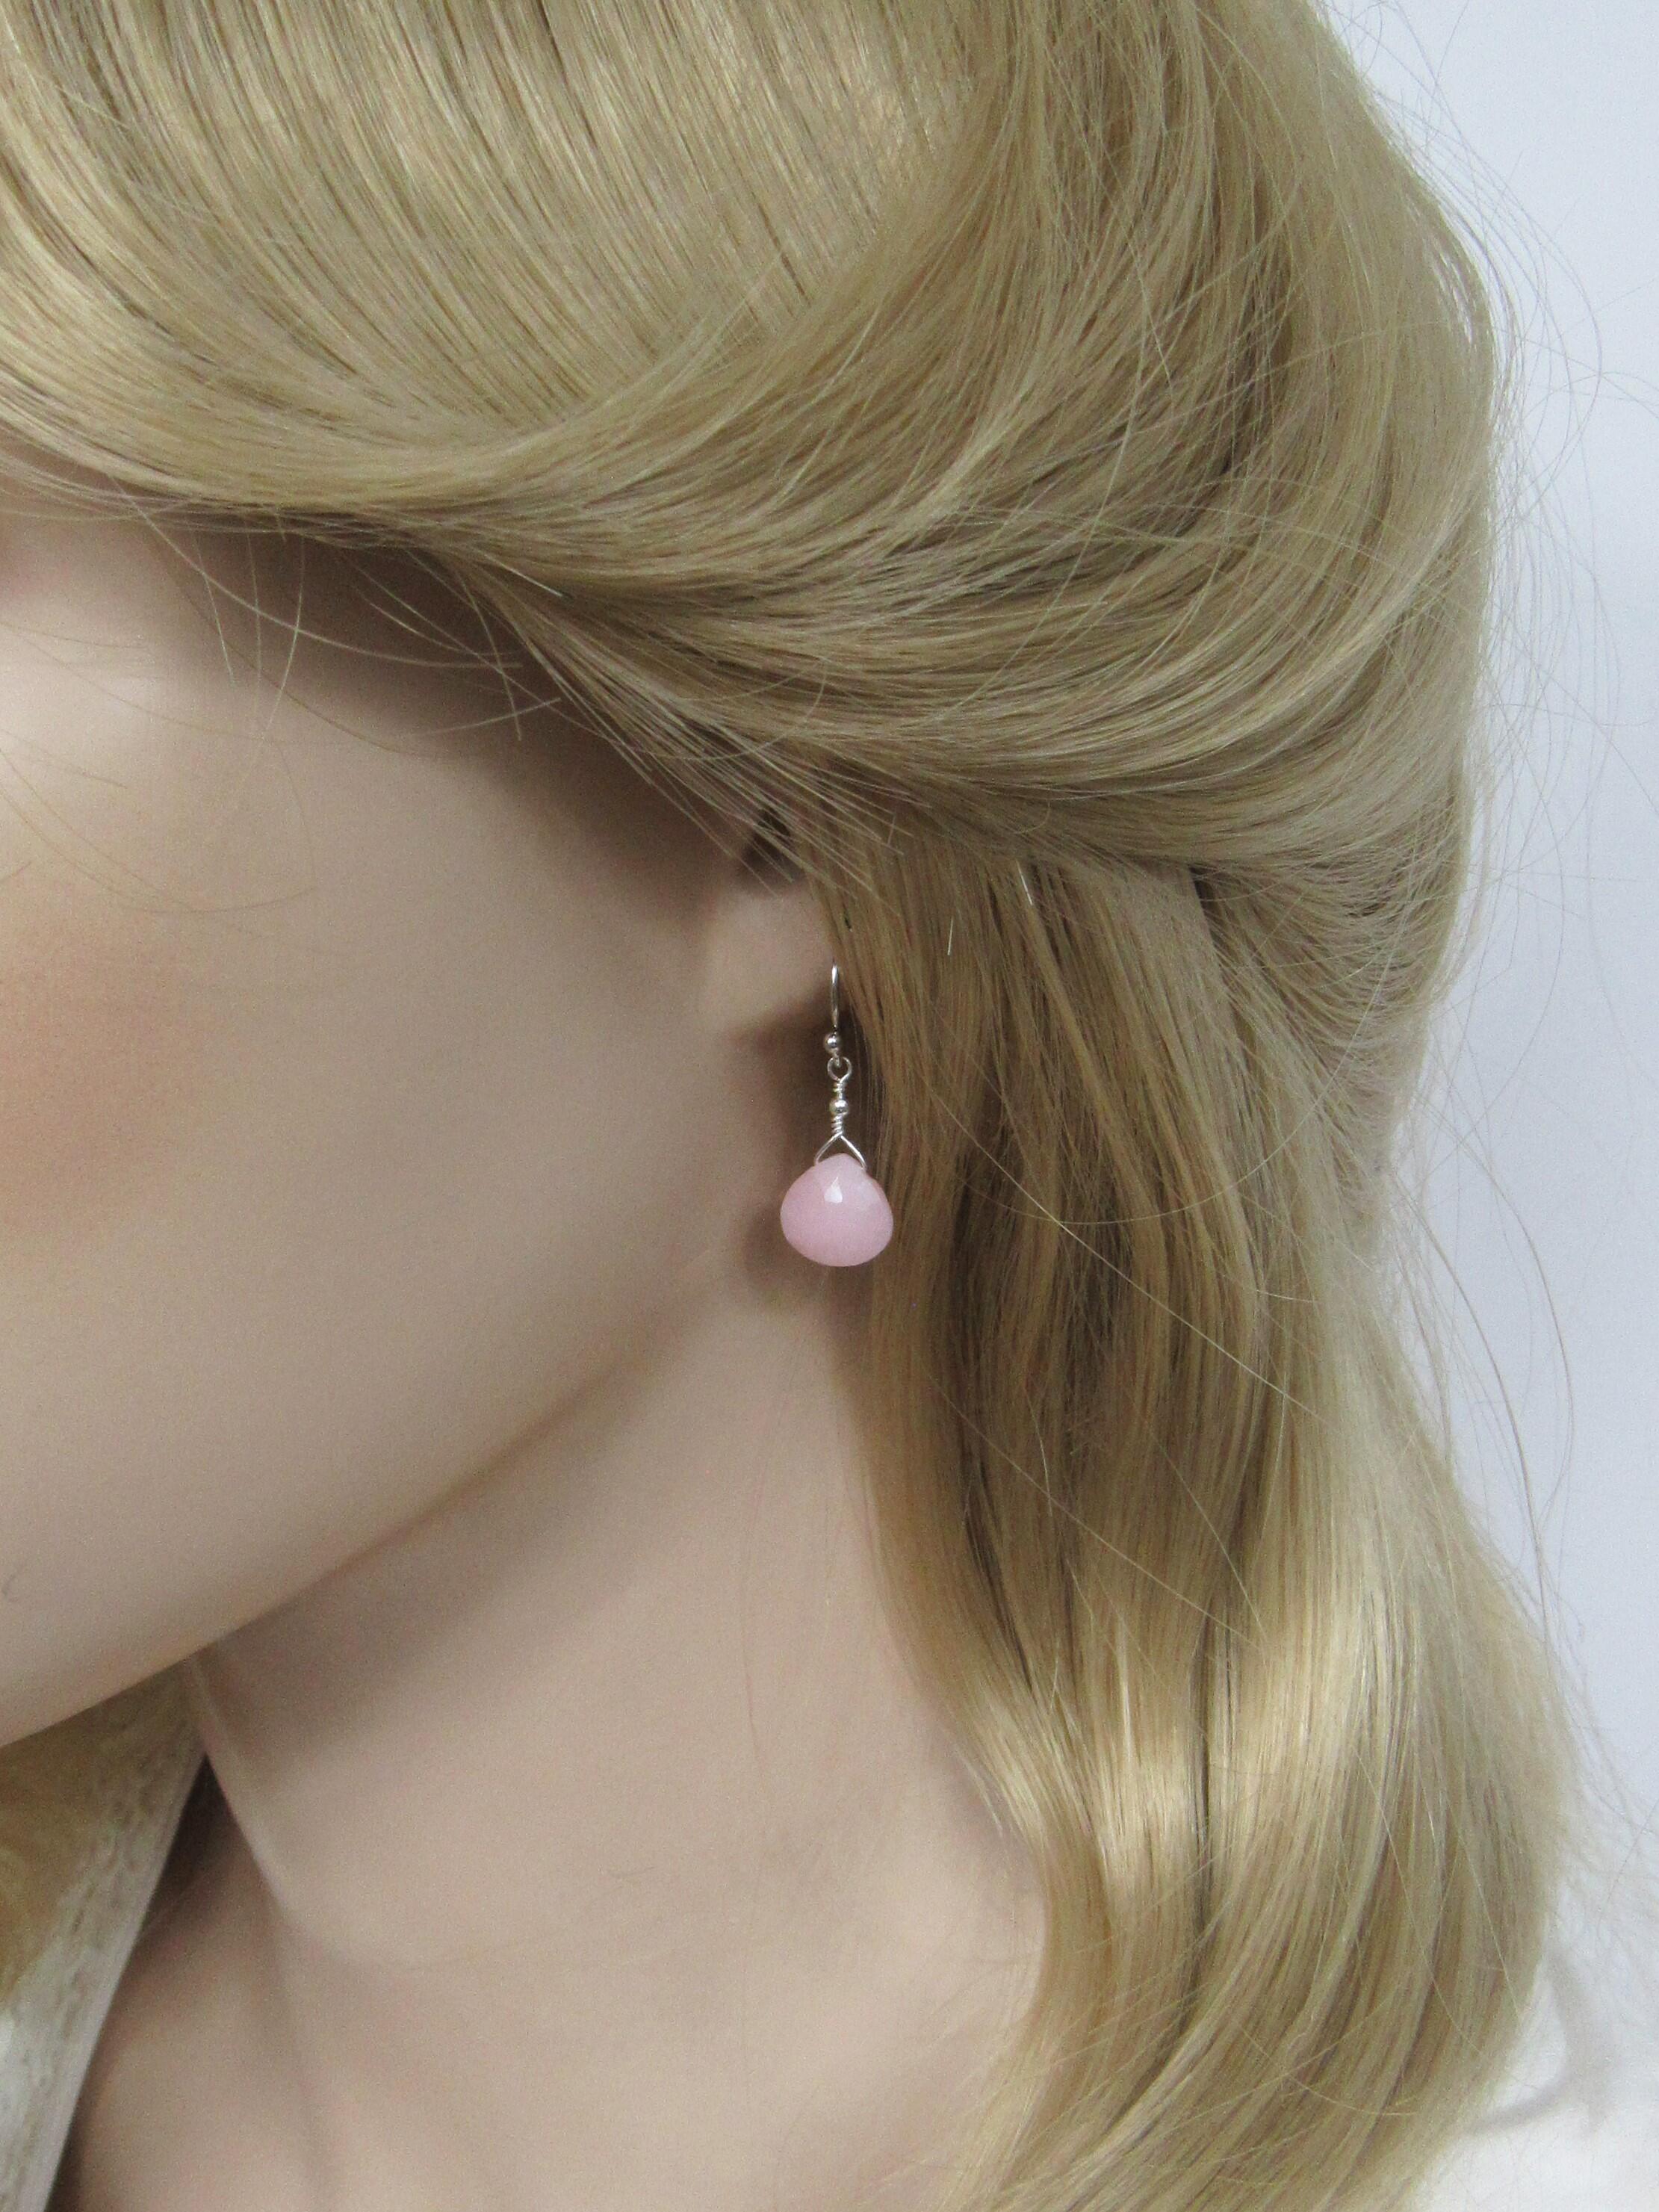 Peruvian Pink Opal Drop Earrings in Sterling Silver